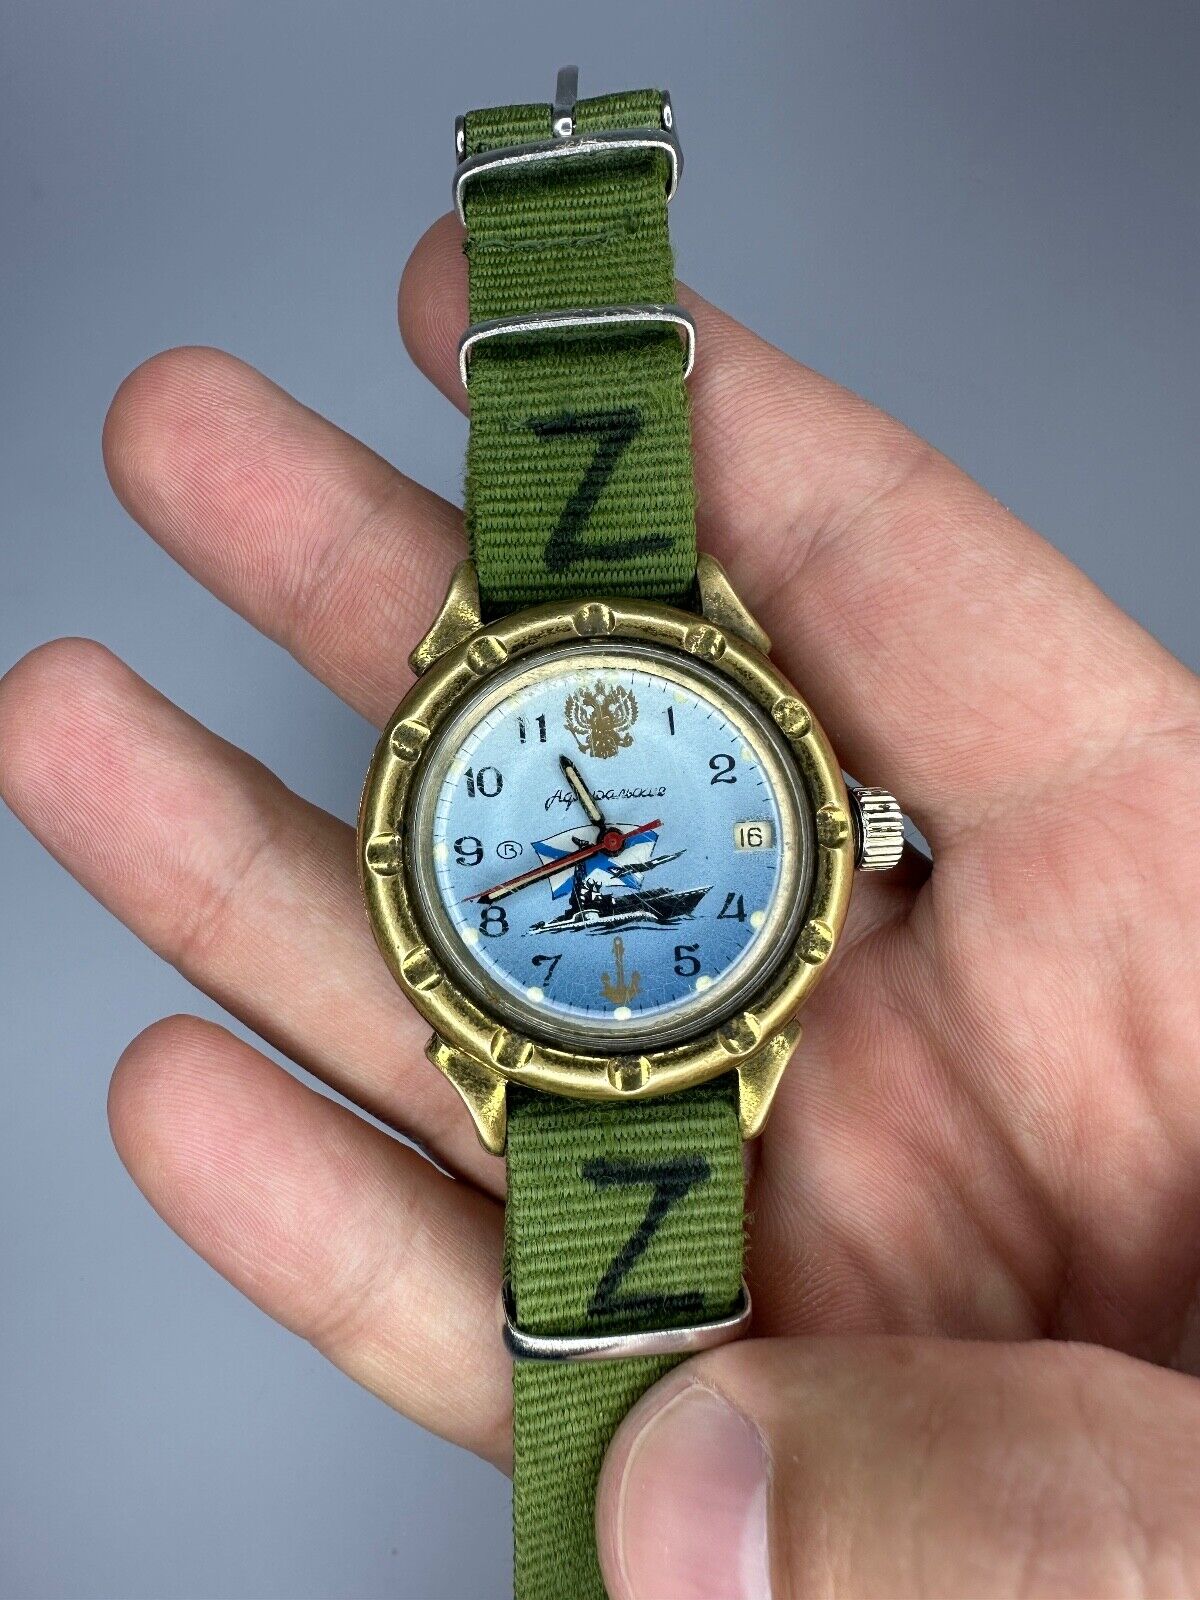 Vostok Watch Vostok Military Watch, Russian watches